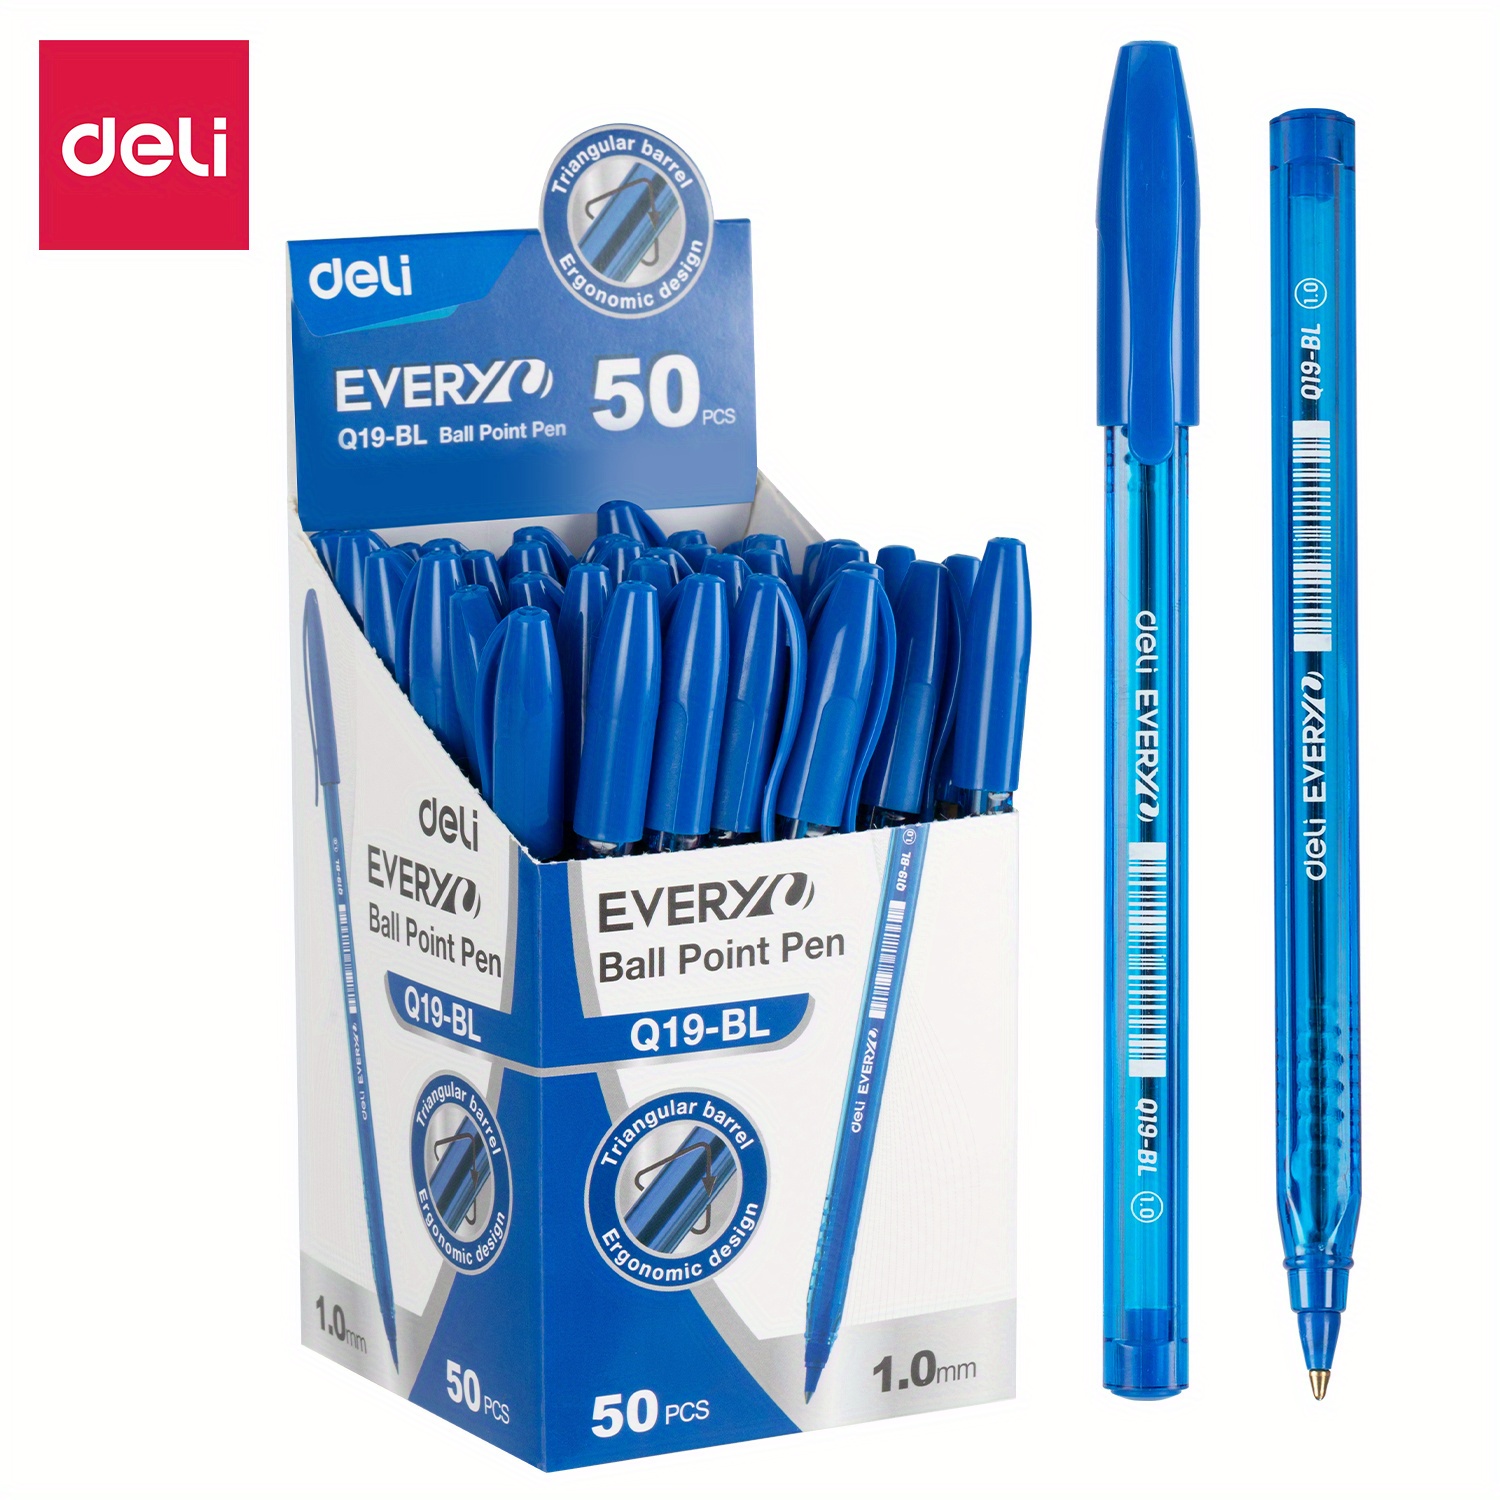 Buy Set of 50 Multi Color Gel Pens at ShopLC.